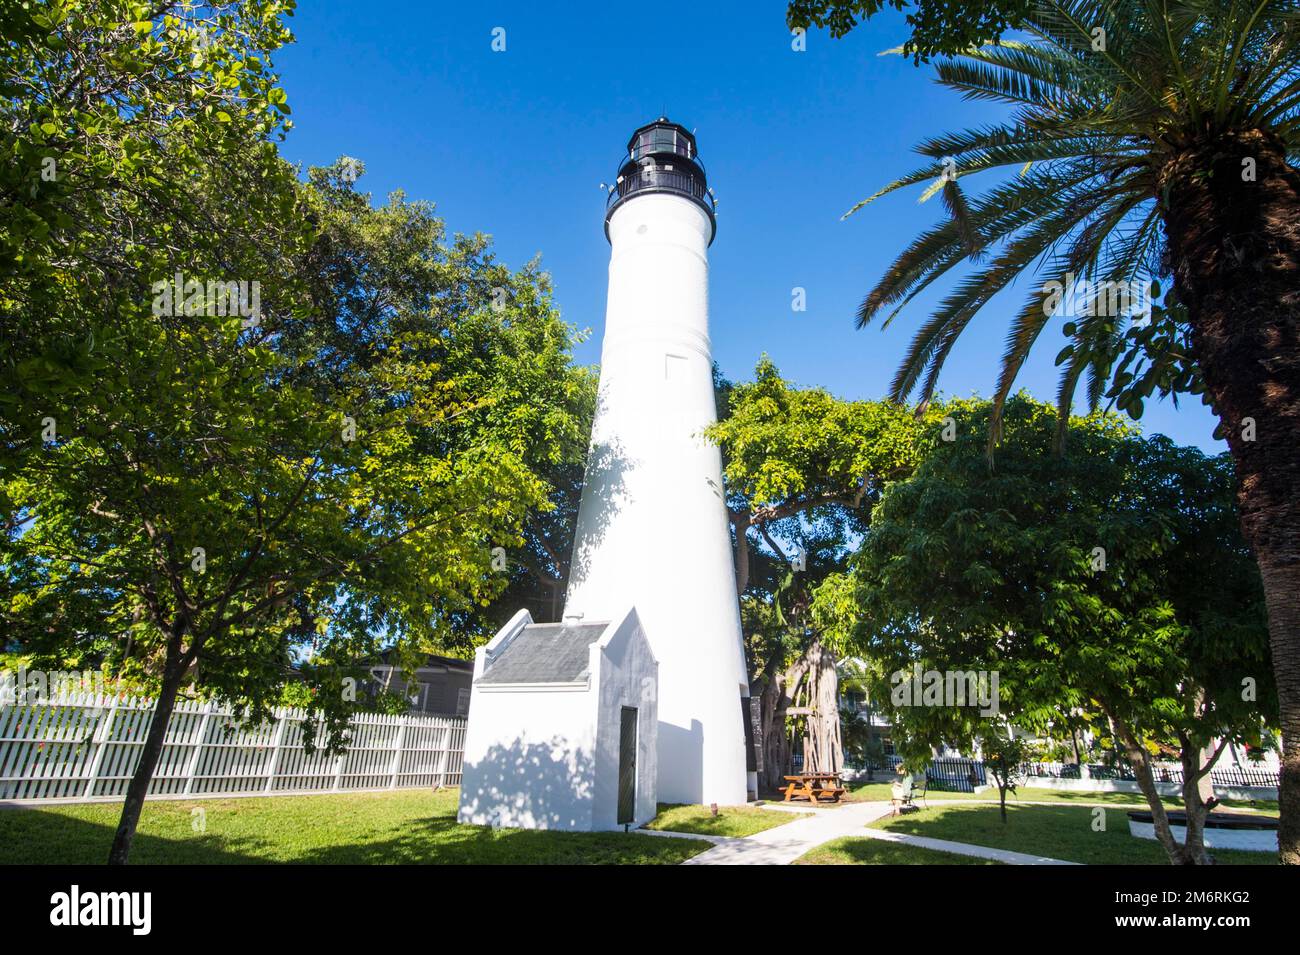 Key west lighthouse, Key West, Florida, USA Stock Photo